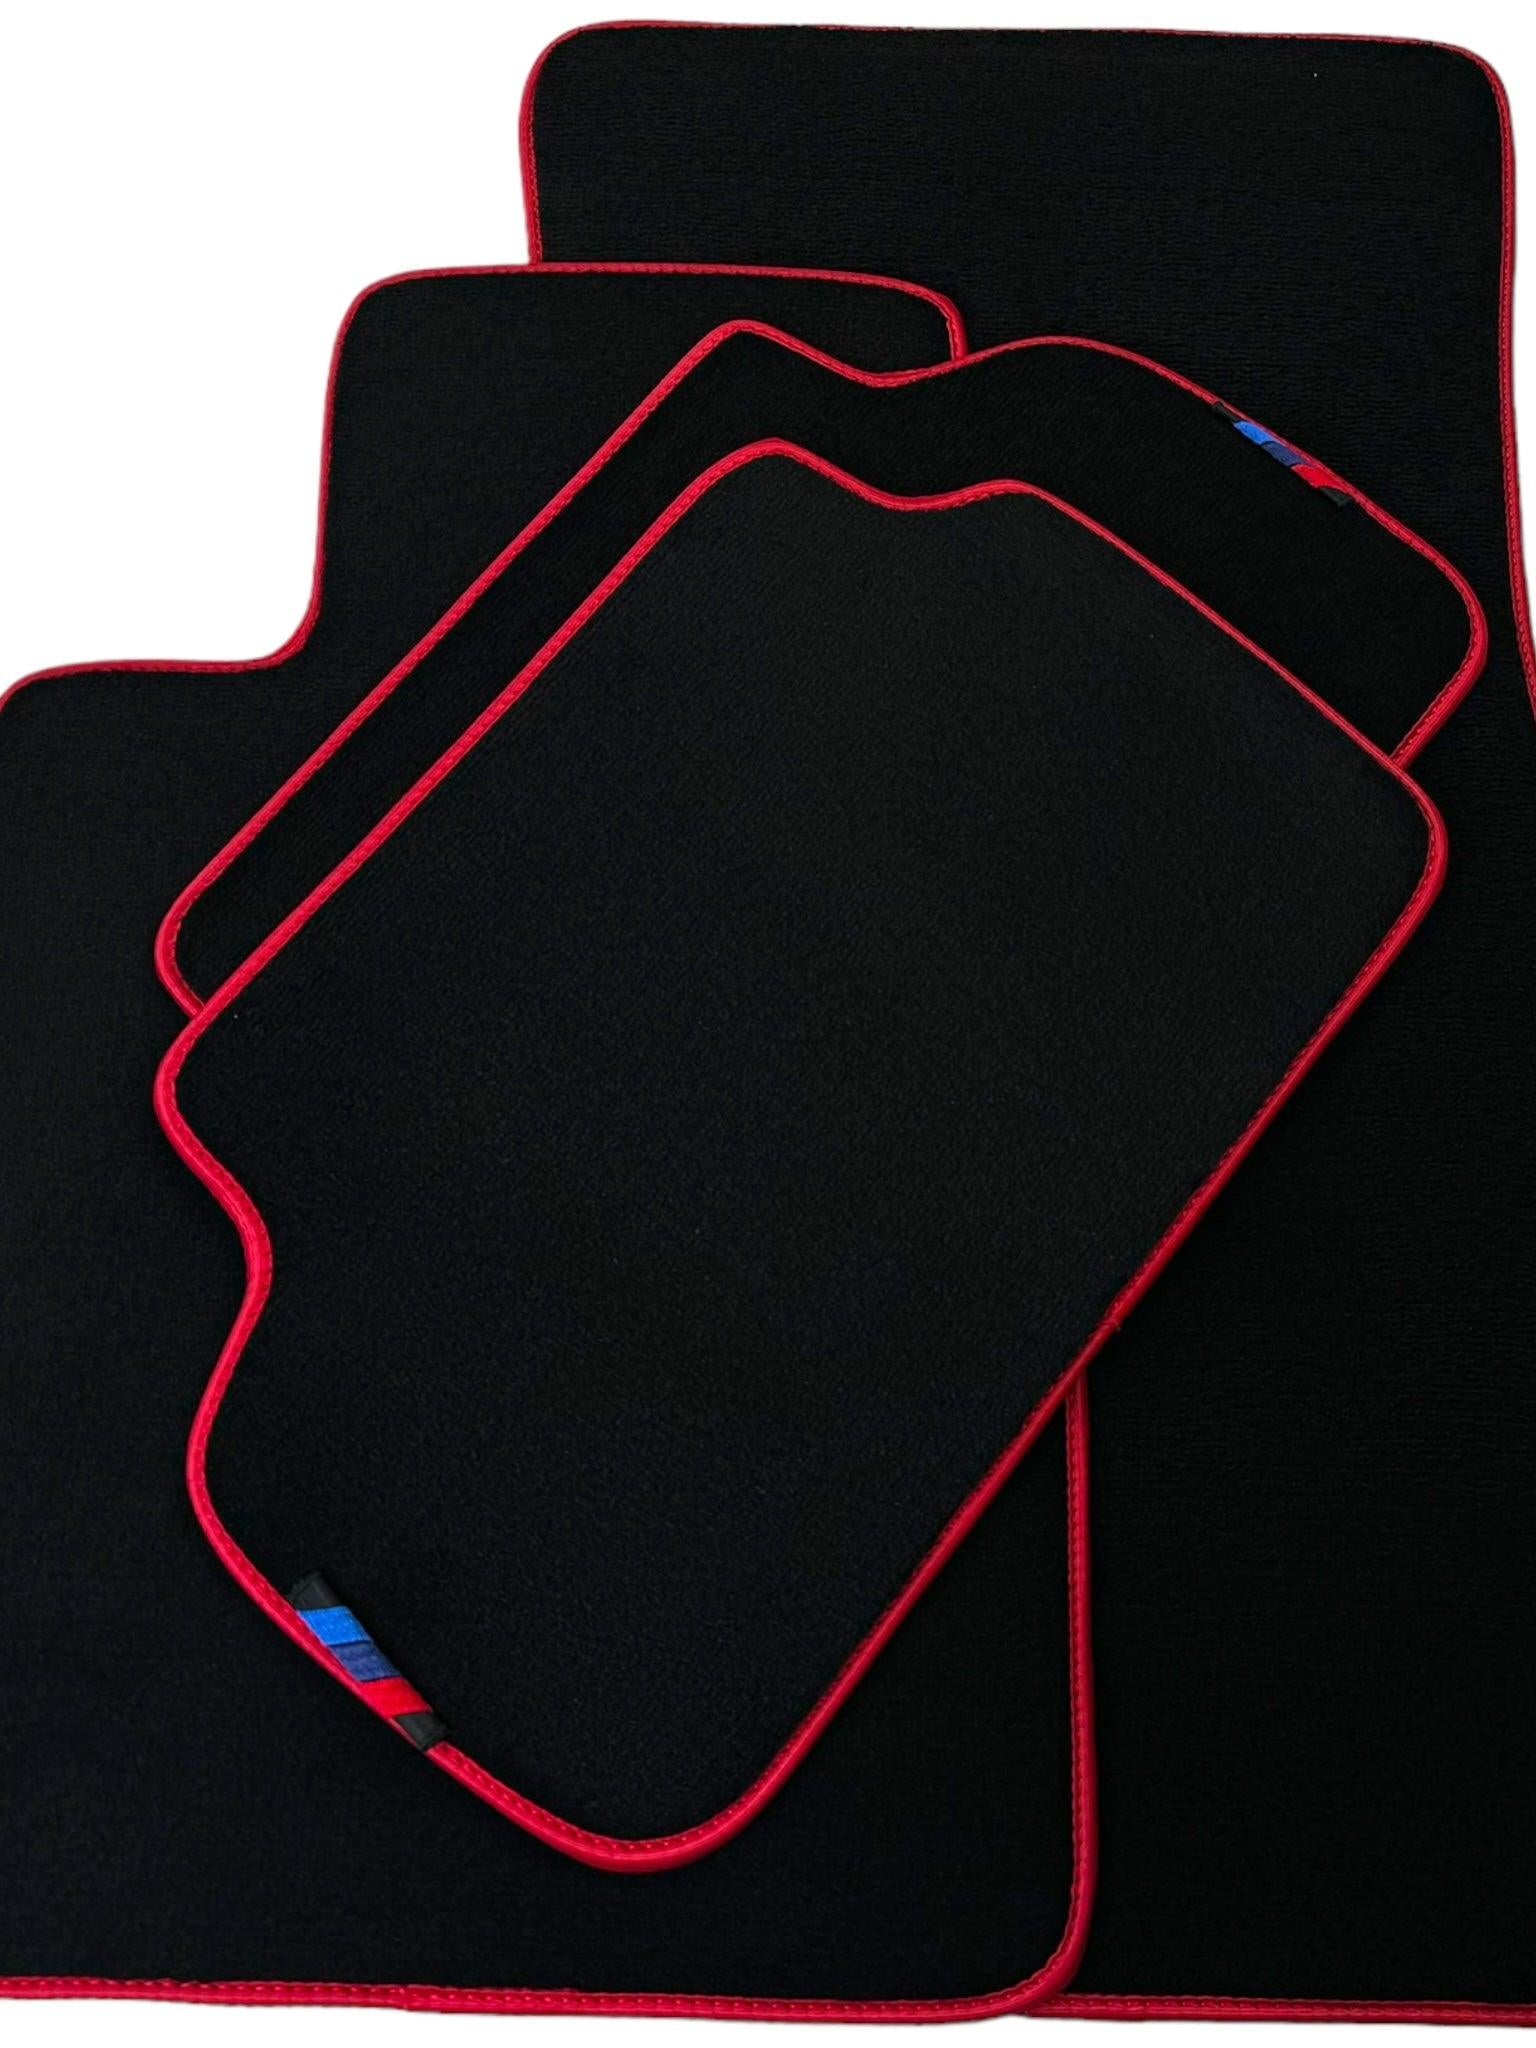 Black Floor Floor Mats For BMW 1 Series F20 | Red Trim